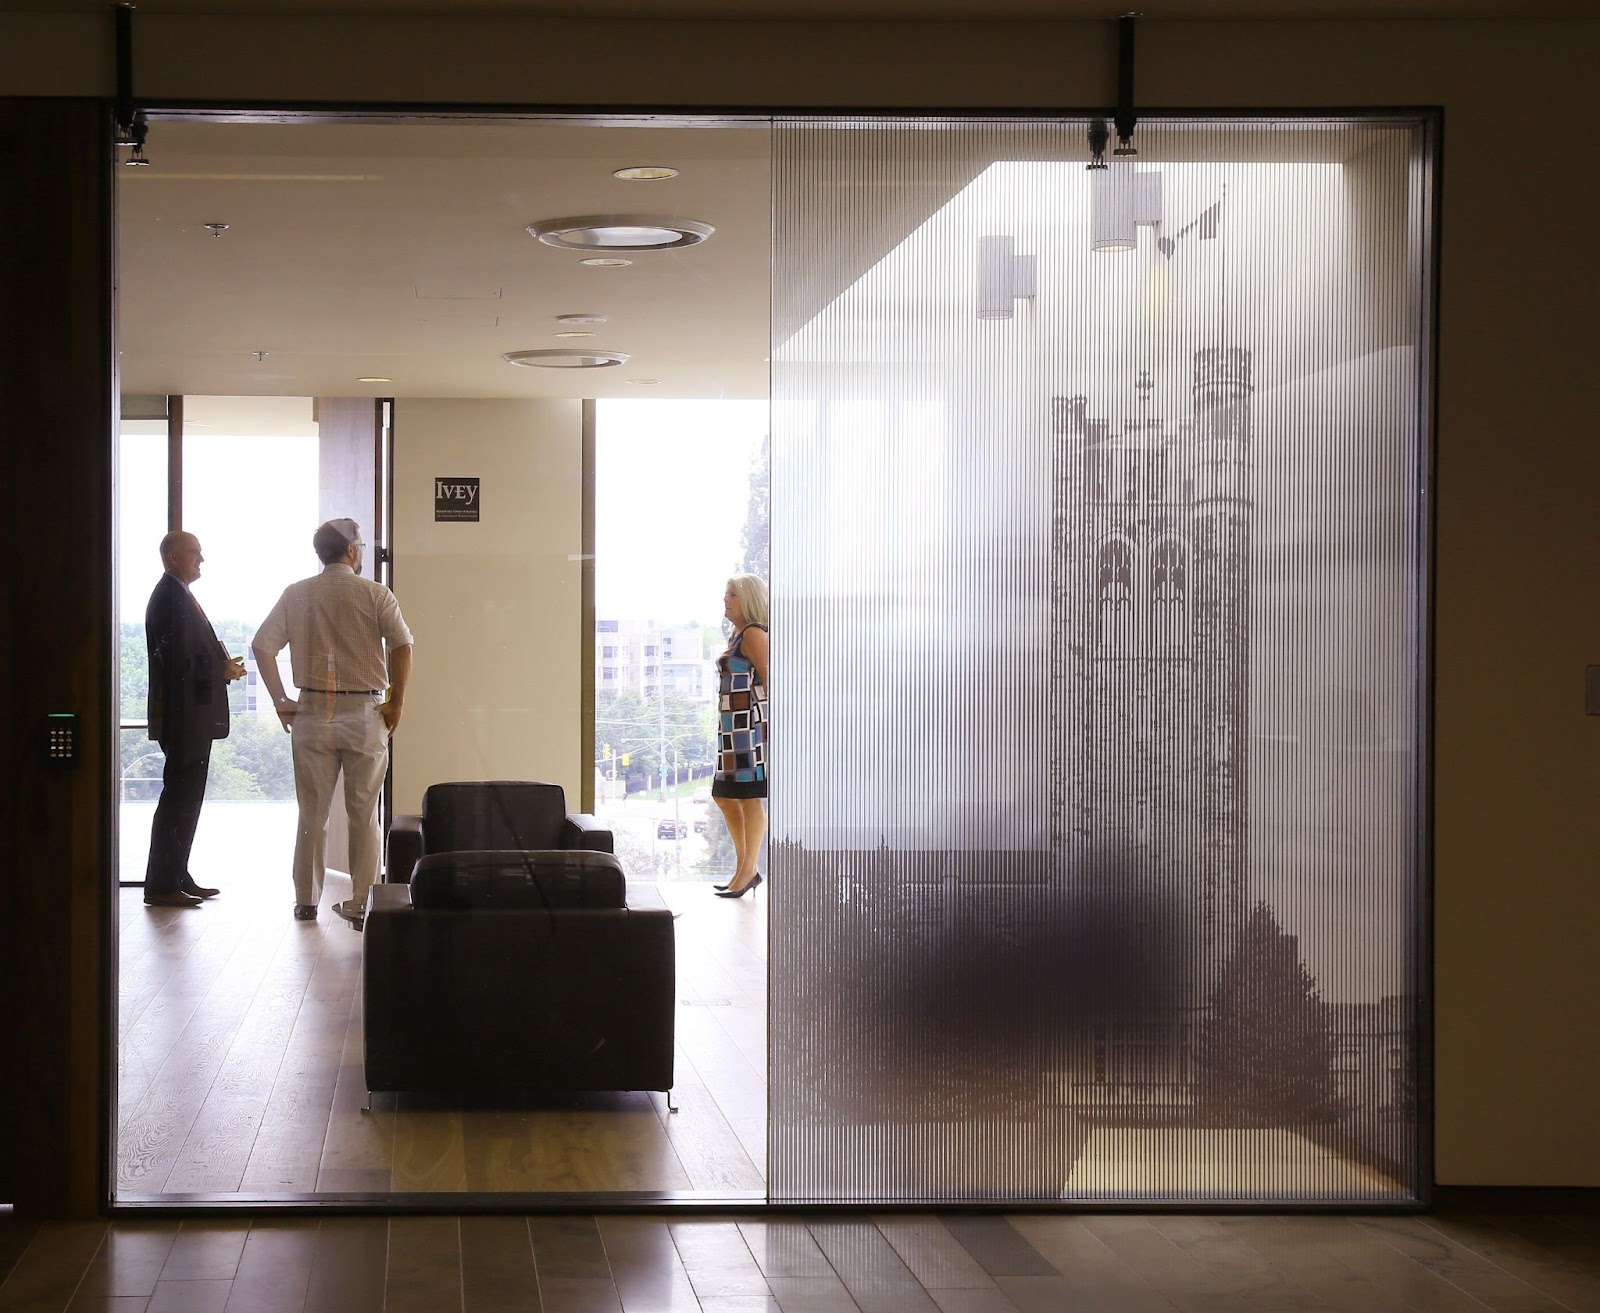 digital graphics can open indoor spaces